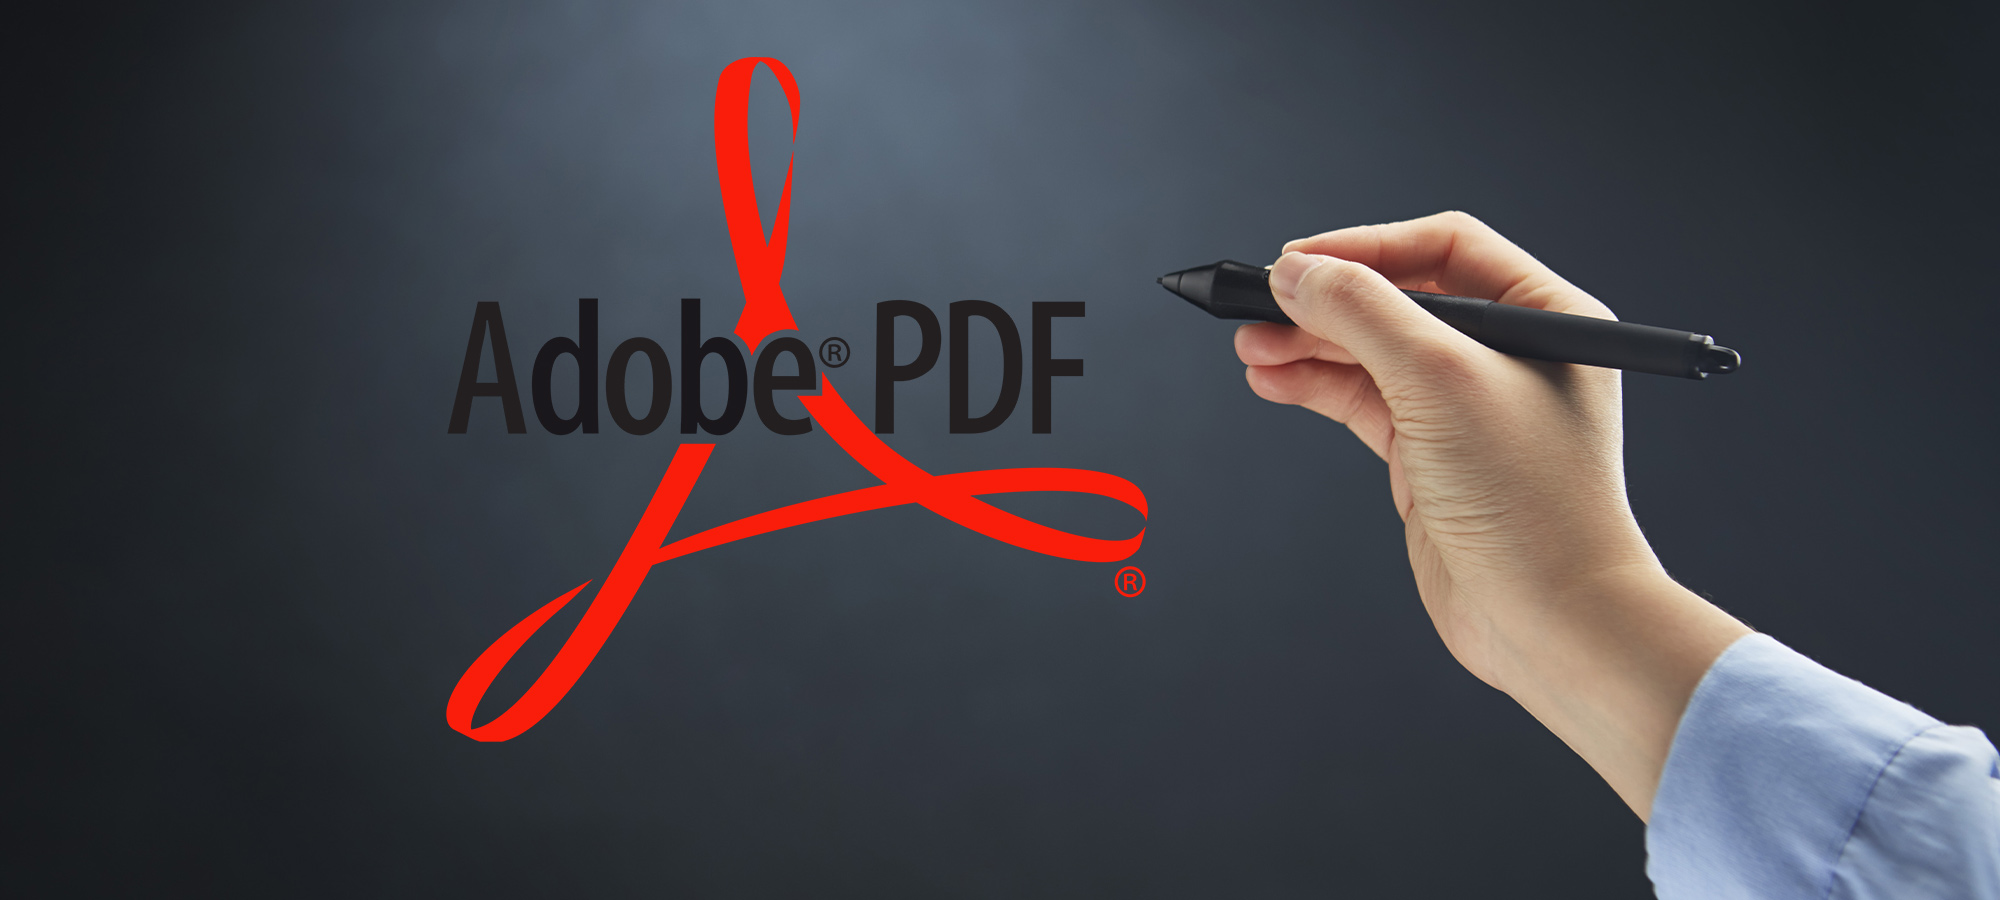 Logo Adobe PDF avec une main qui tient un stylet